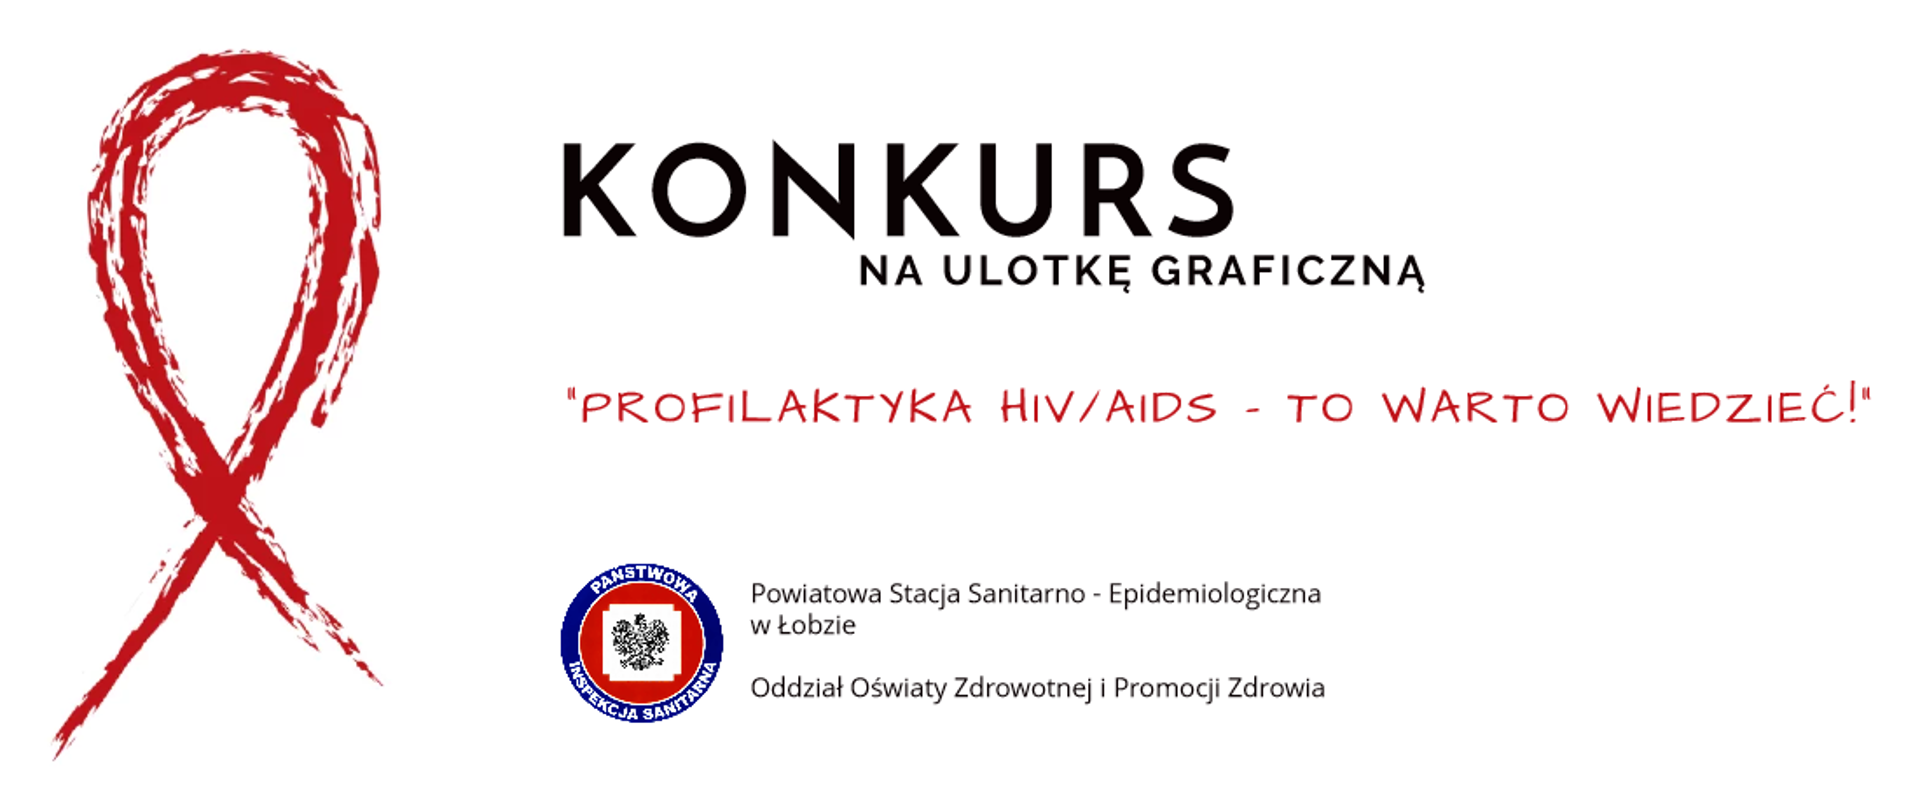 Na grafice po lewej stronie znajduje się czerwona wstążka. Po jej prawej stronie widnieje napis Konkurs na ulotkę graficzną "Profilaktyka HIV/AIDS - To warto wiedzieć!". Poniżej znajduje się logo Państwowej Inspekcji Sanitarnej wraz z napisem Powiatowa Stacja Sanitarno Epidemiologiczna w Łobzie Oddział Oświaty Zdrowotnej i Promocji Zdrowia.